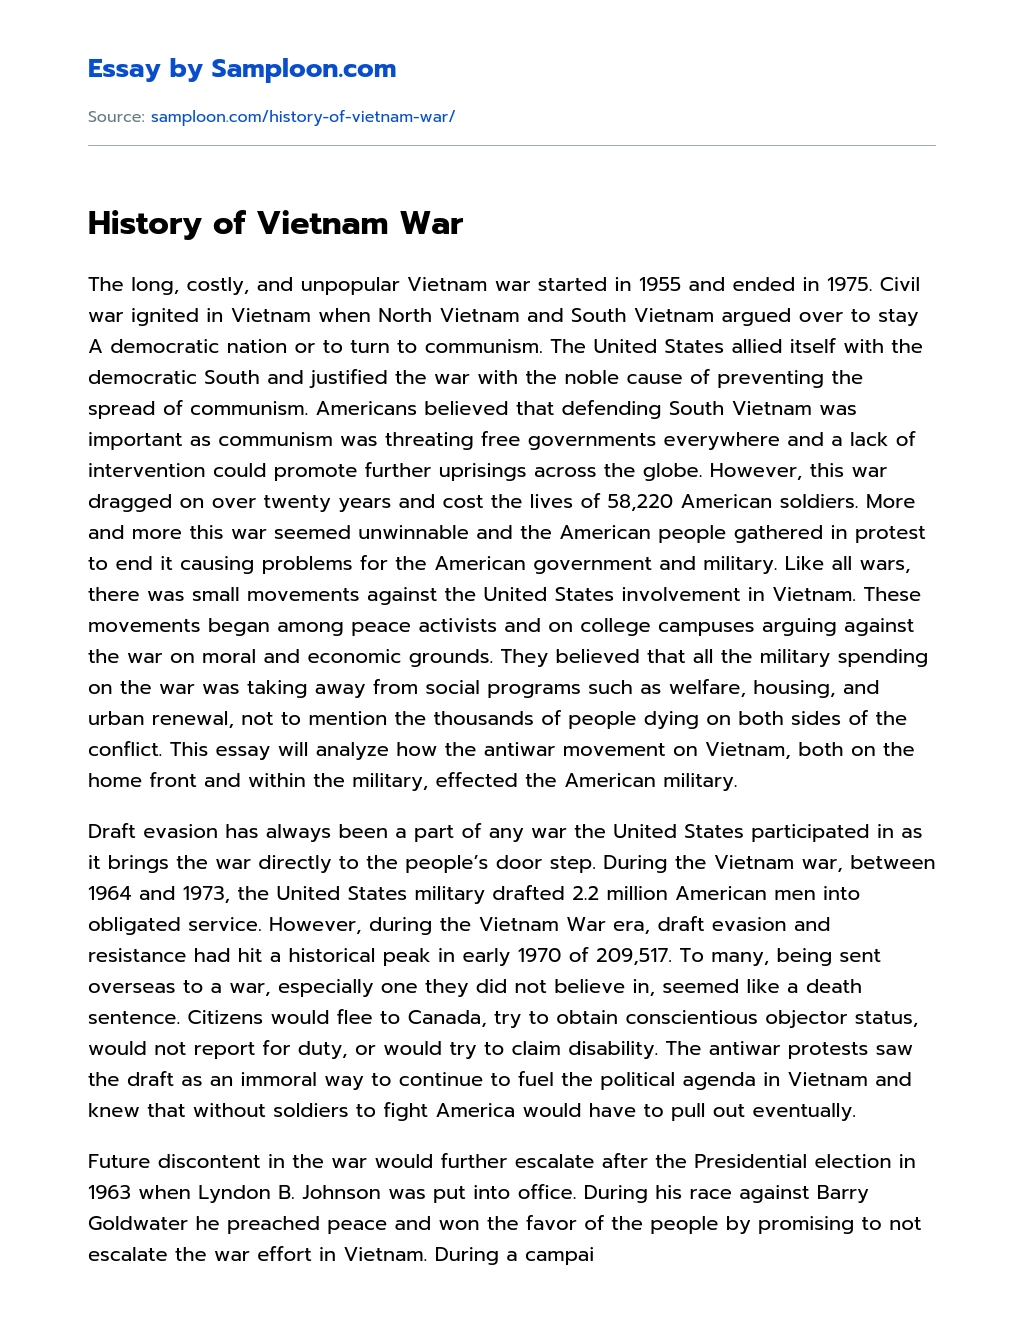 History of Vietnam War essay